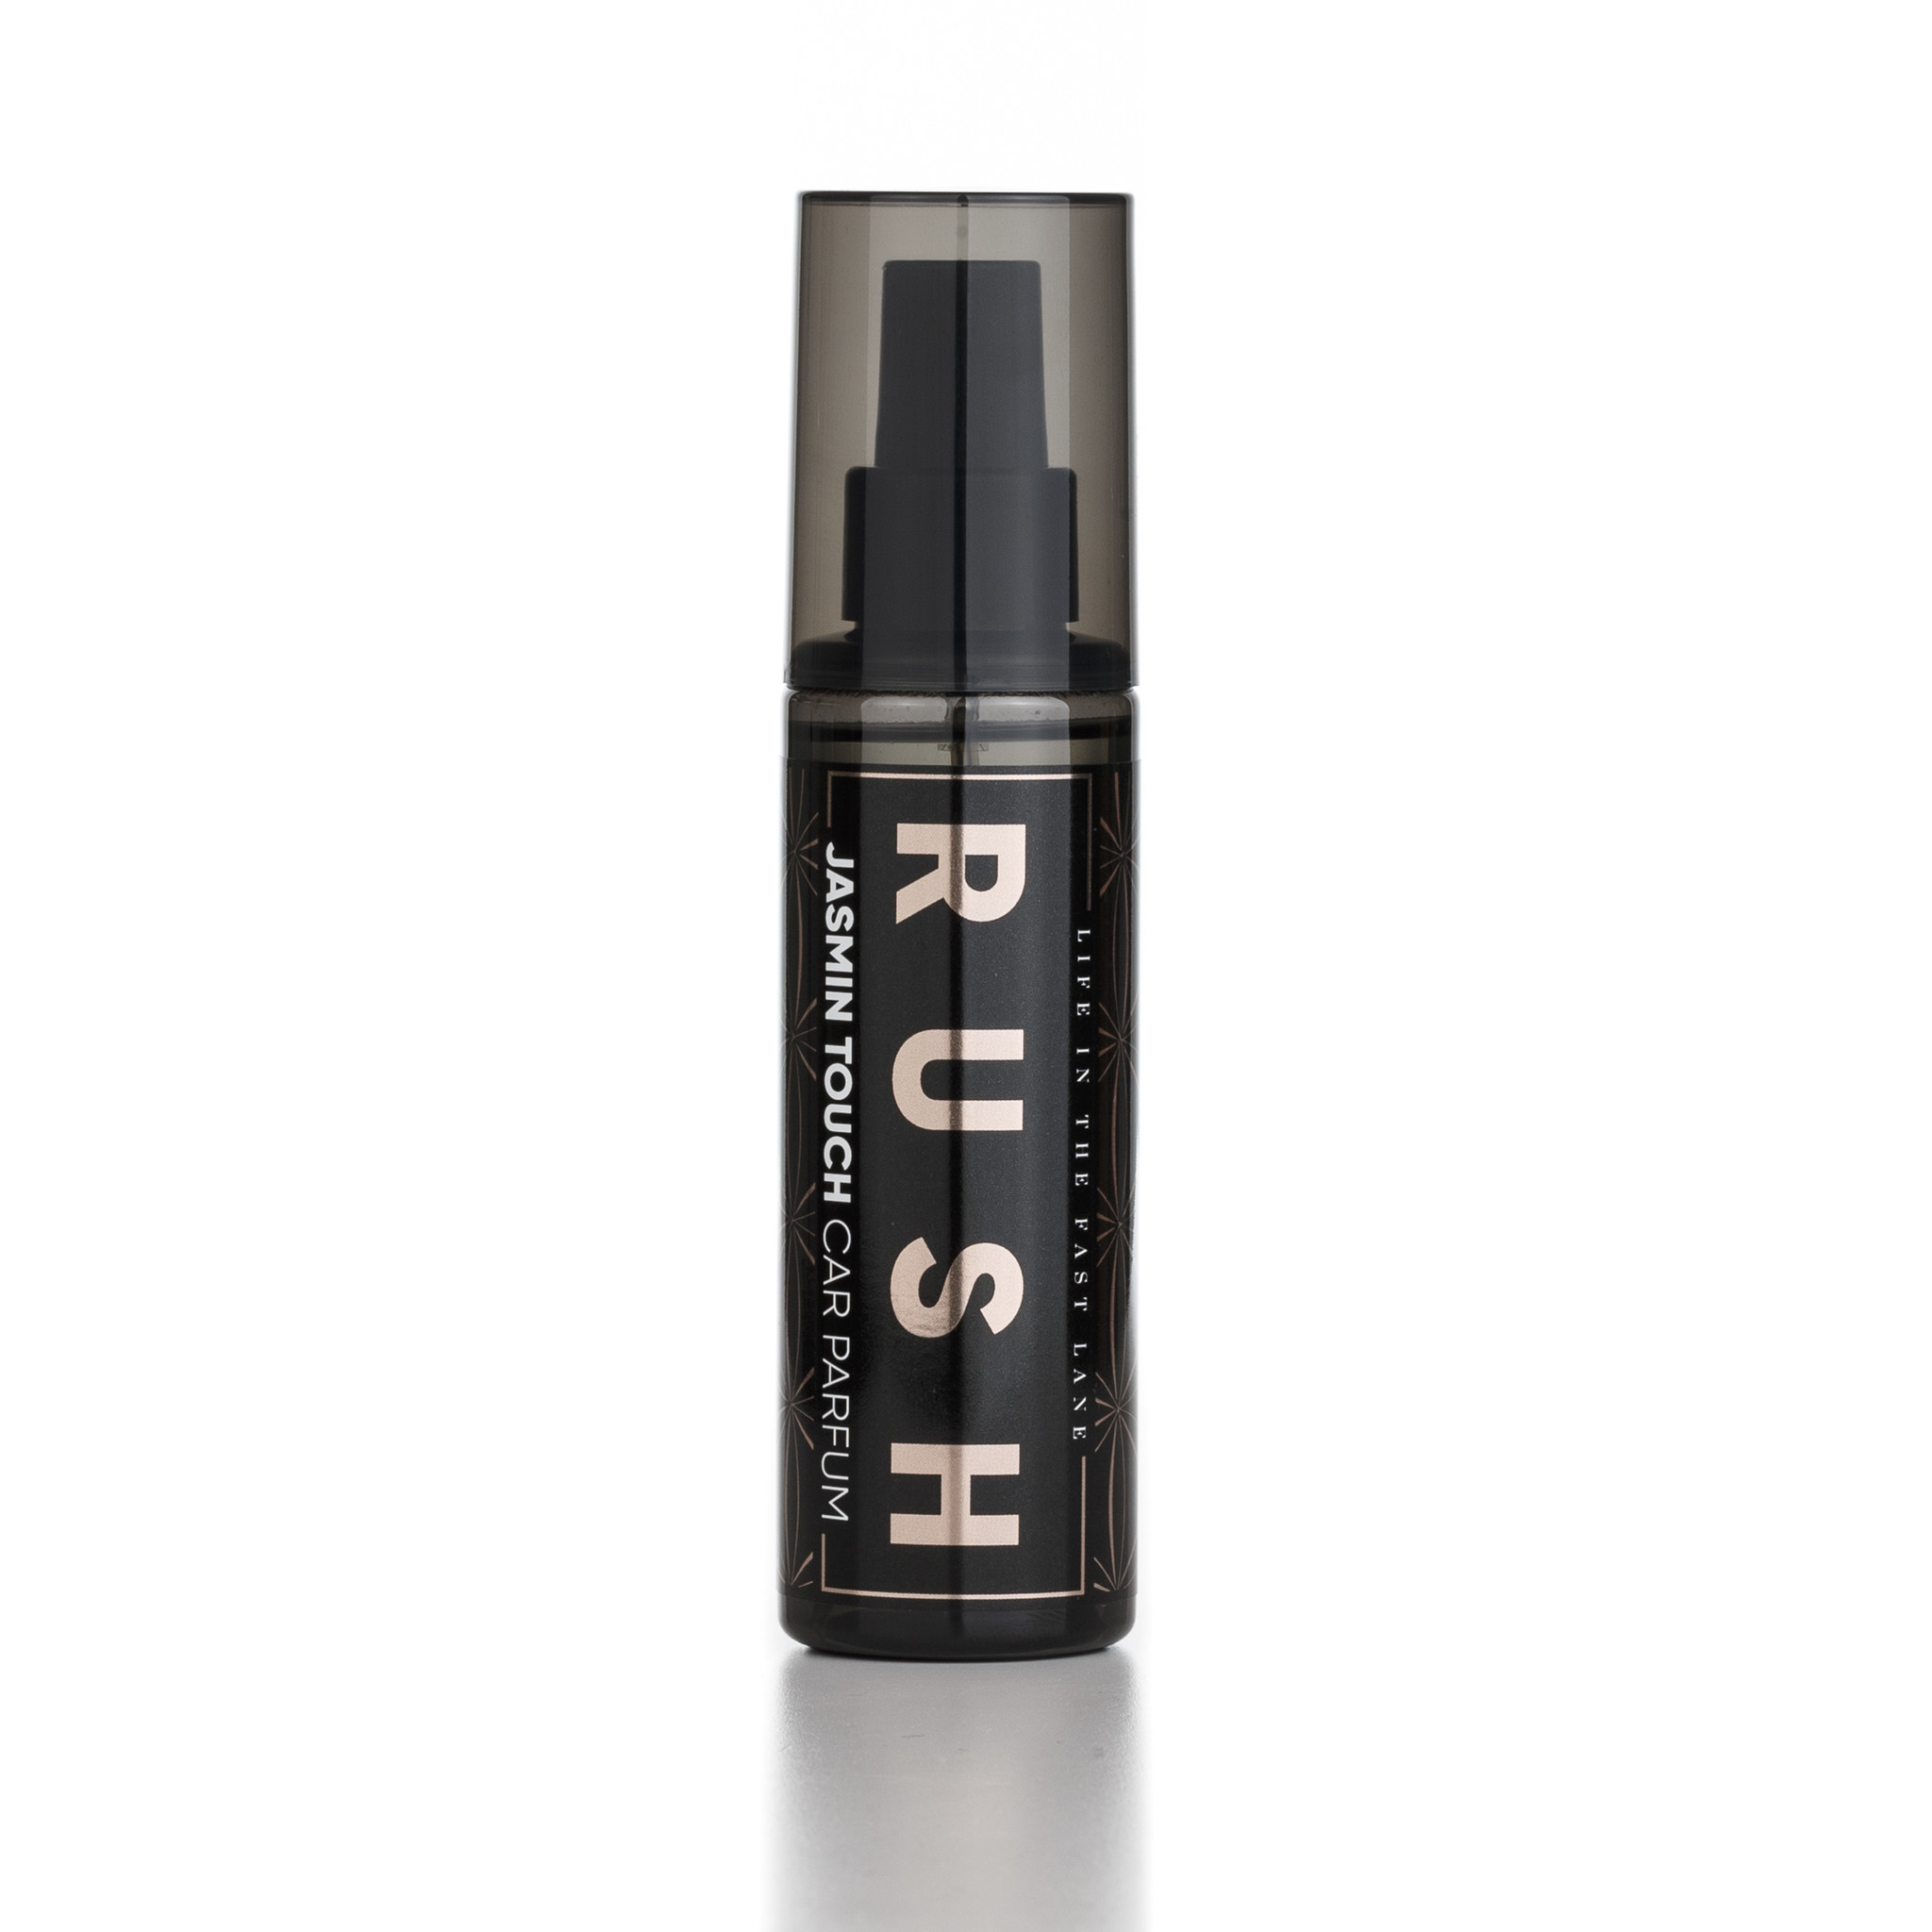 RUSH Jasmin Touch - 125 ml